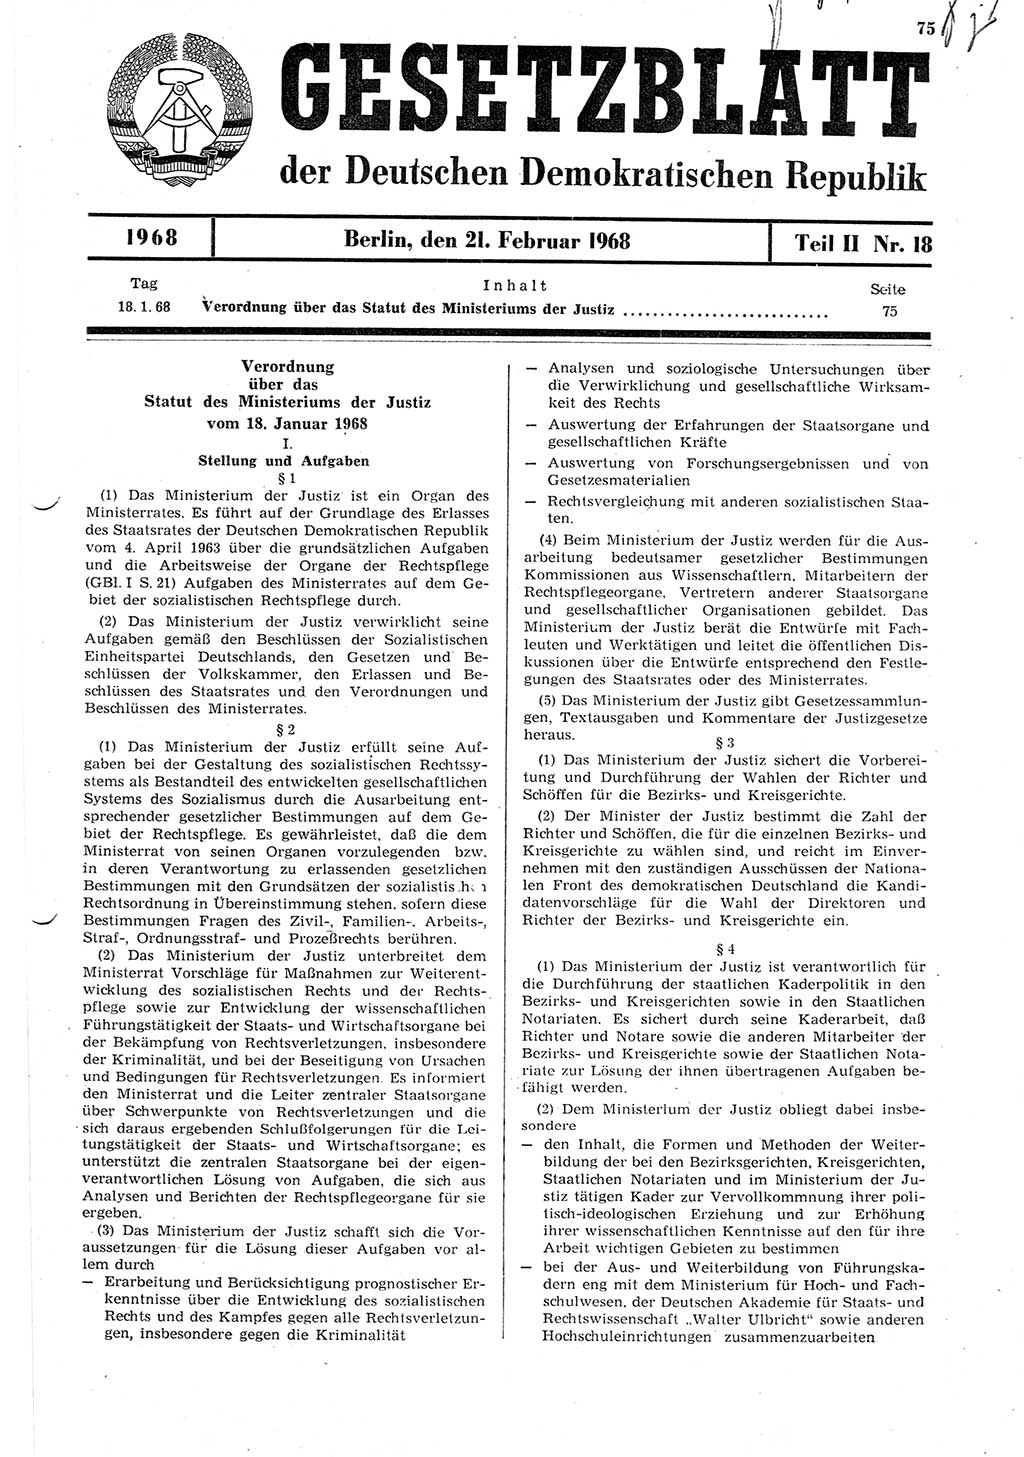 Gesetzblatt (GBl.) der Deutschen Demokratischen Republik (DDR) Teil ⅠⅠ 1968, Seite 75 (GBl. DDR ⅠⅠ 1968, S. 75)